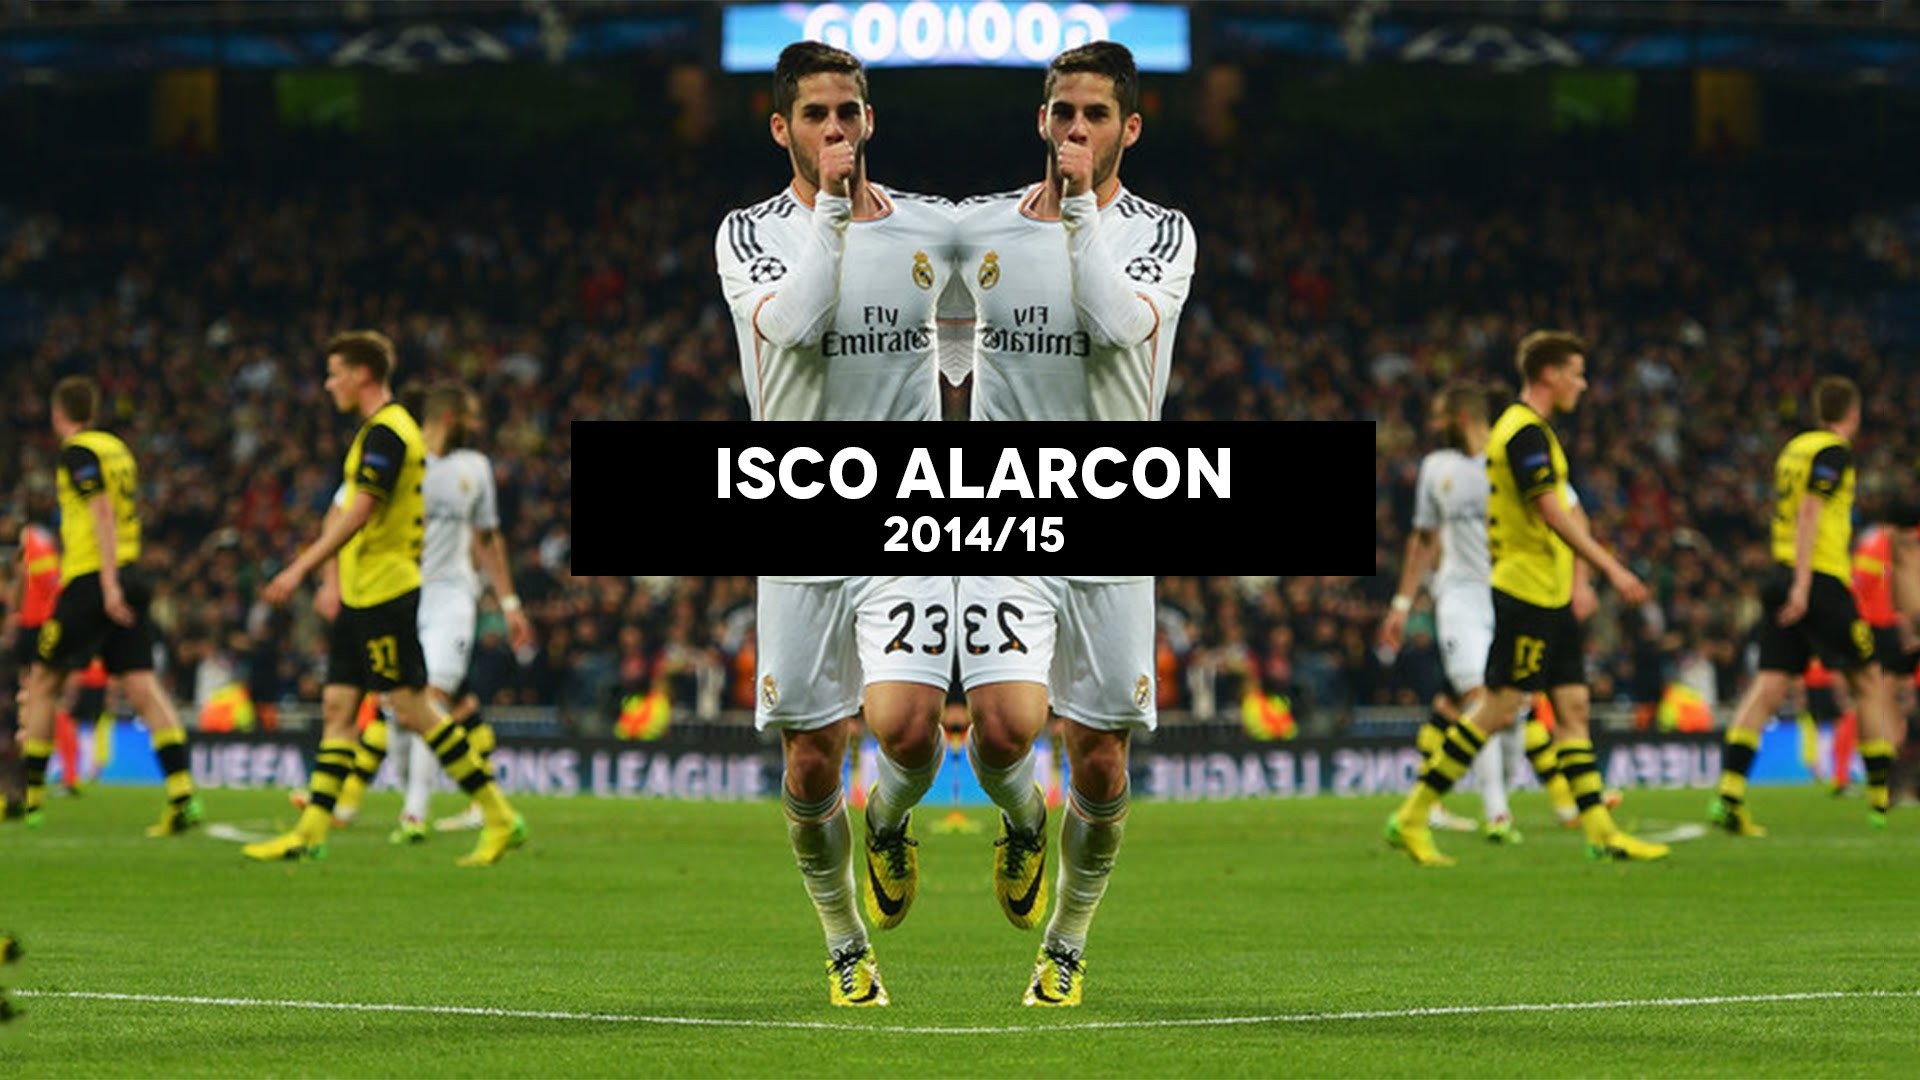 1920x1080 Isco Alarcon â Magician | Goals & Skills | Real Madrid | 2014/15 - YouTube